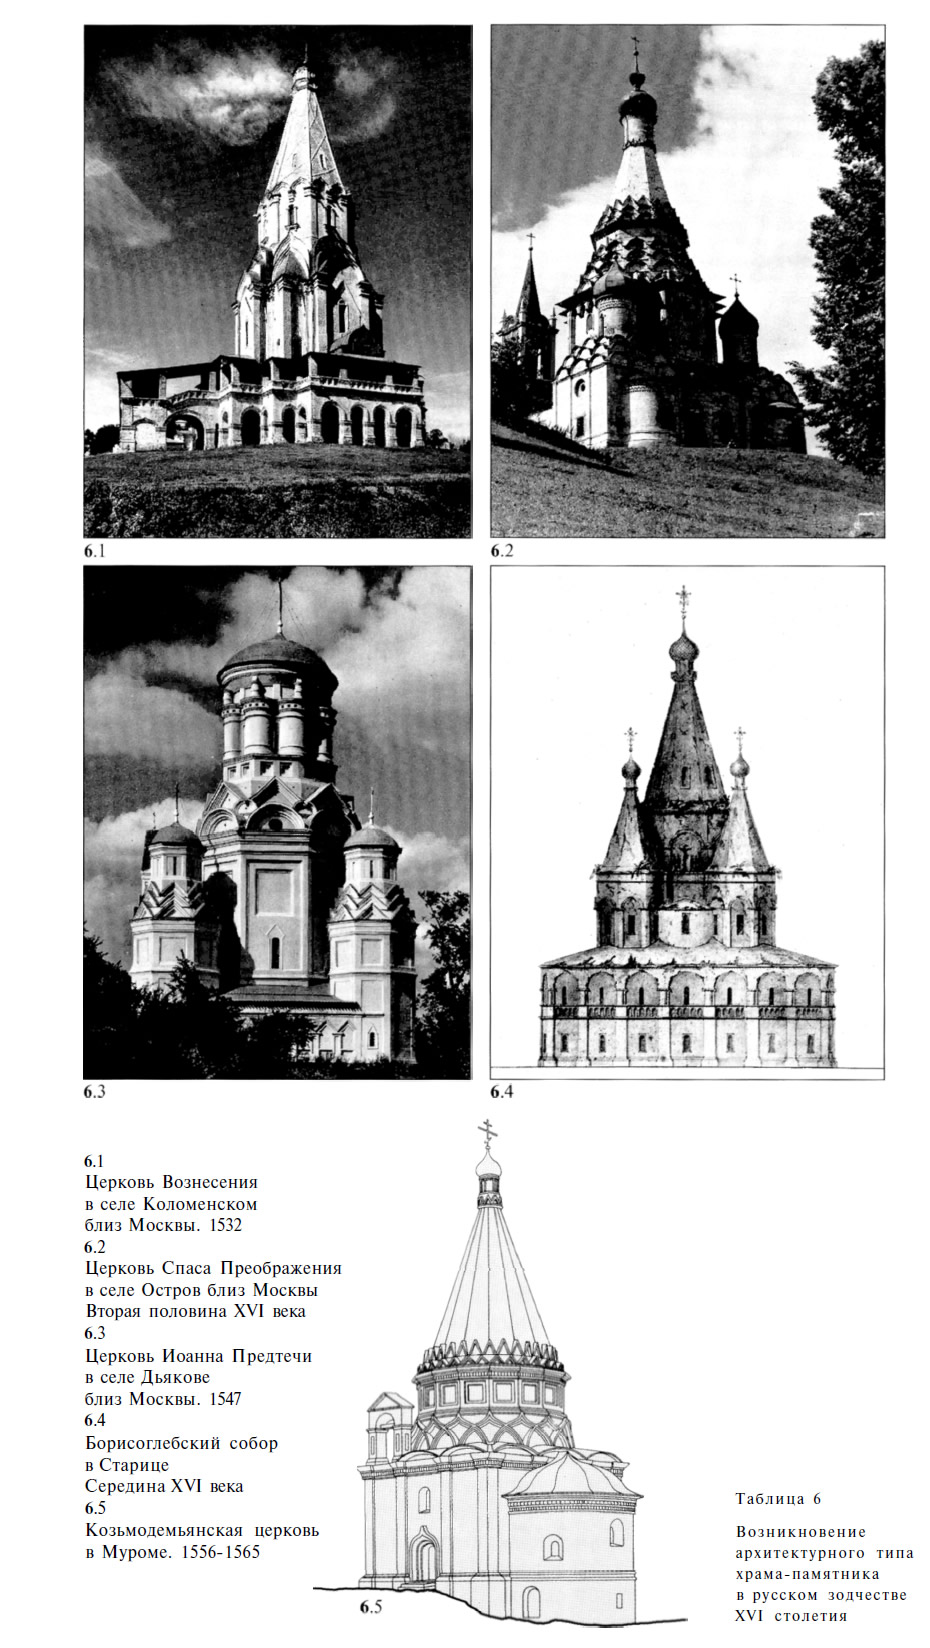 Возникновение архитектурного типа храма-памятника в русском зодчестве XVI столетия